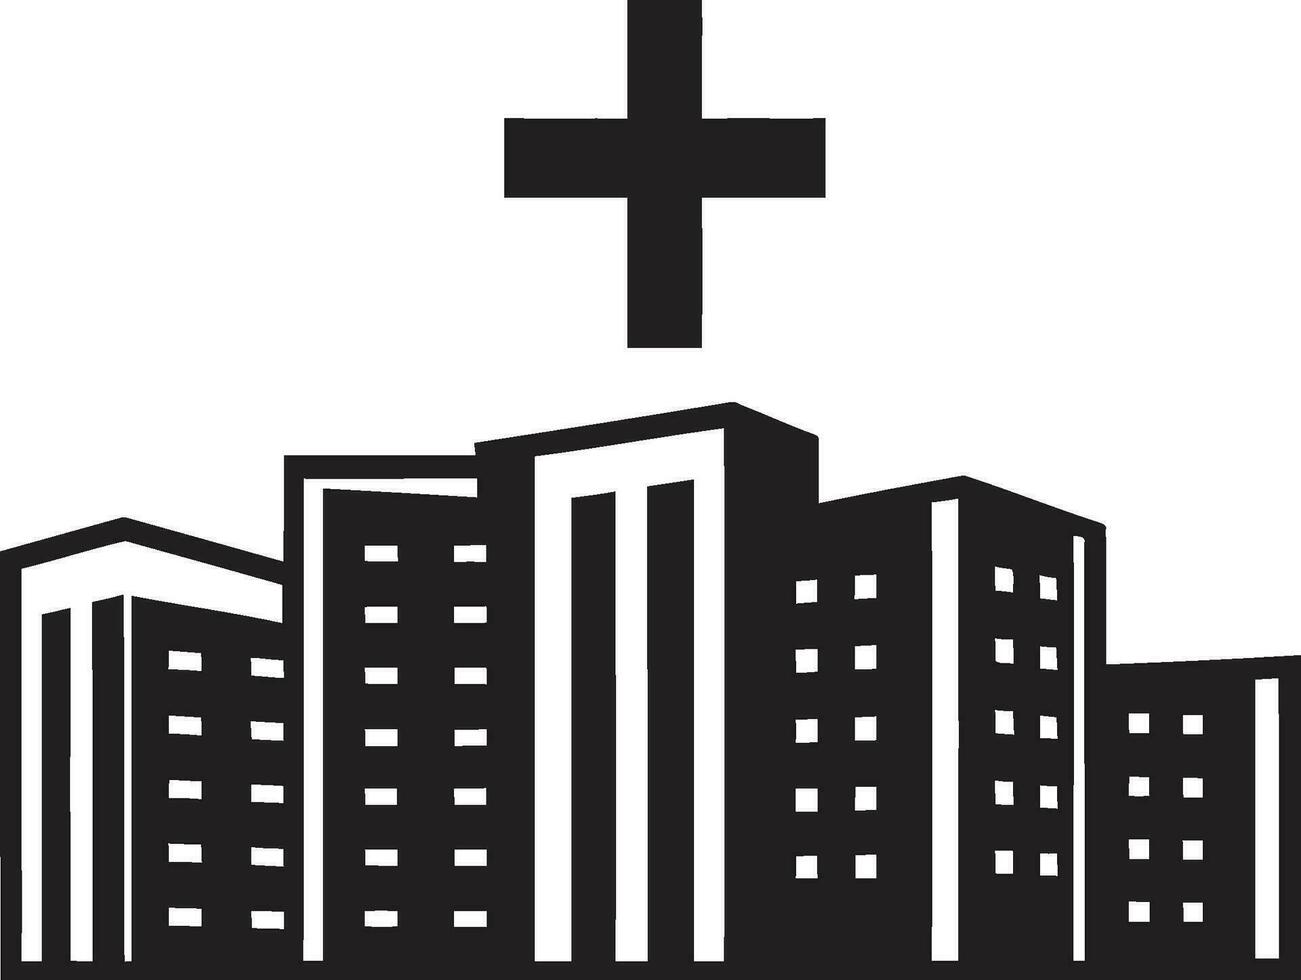 gezondheidslandschap hub kliniek logo embleem genezen citadel ziekenhuis iconisch vector